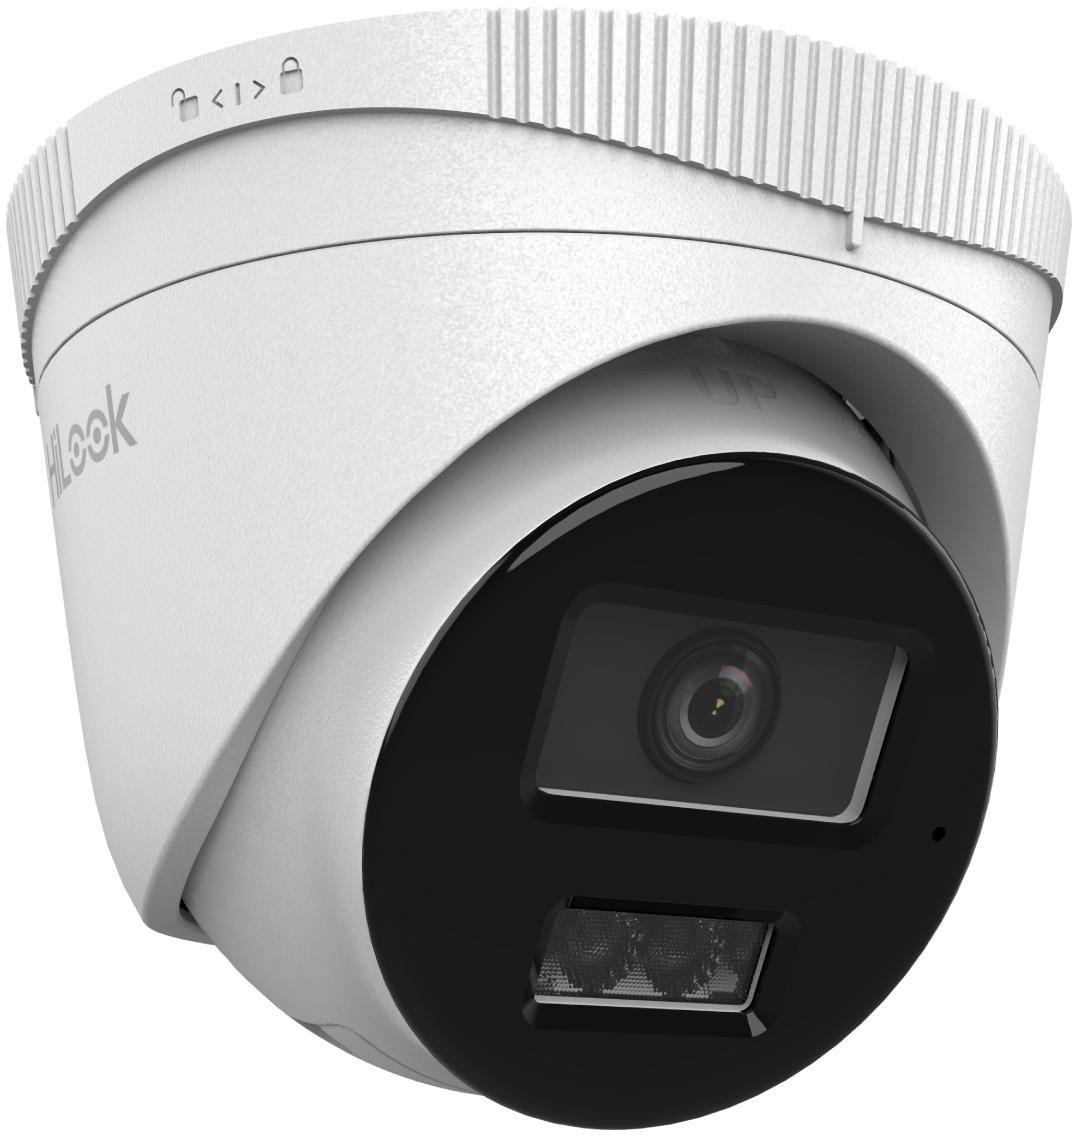 Kamera IP Hilook turret 4MP IPCAM-T4-30DL 2.8mm- wysoka jakość obrazu